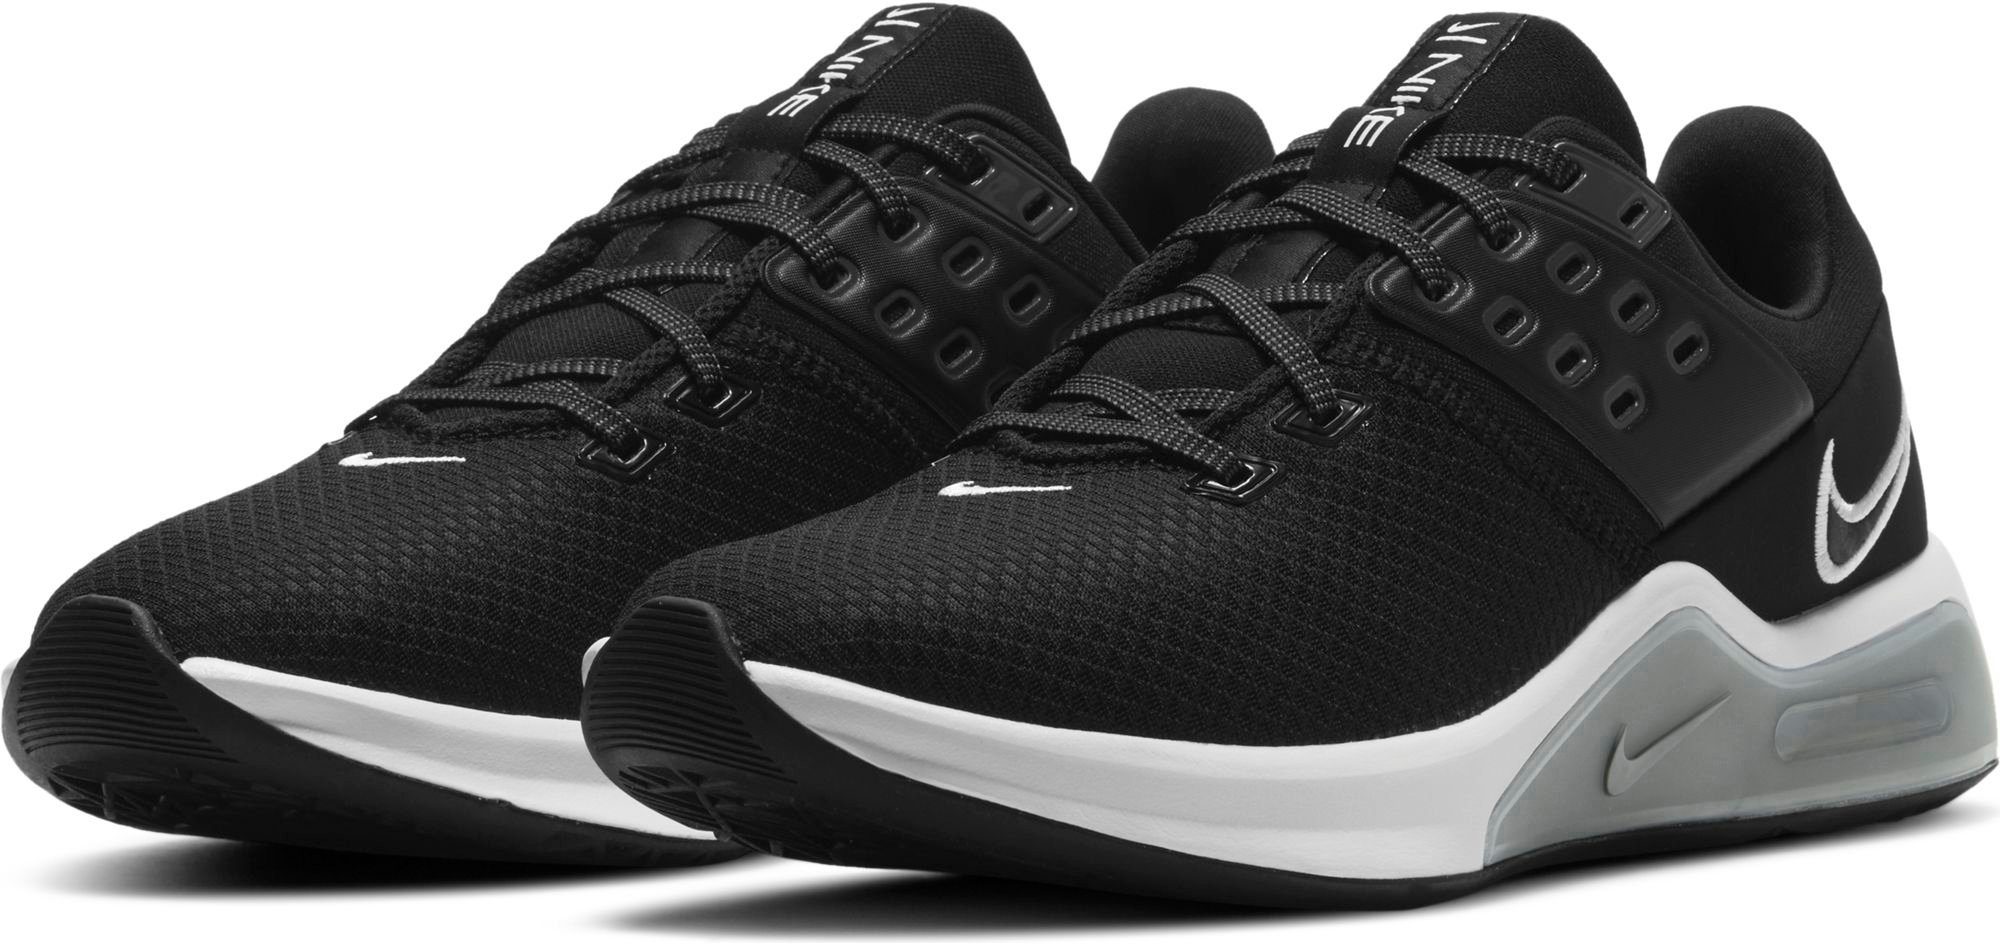 Nike Sportschuhe online kaufen | OTTO